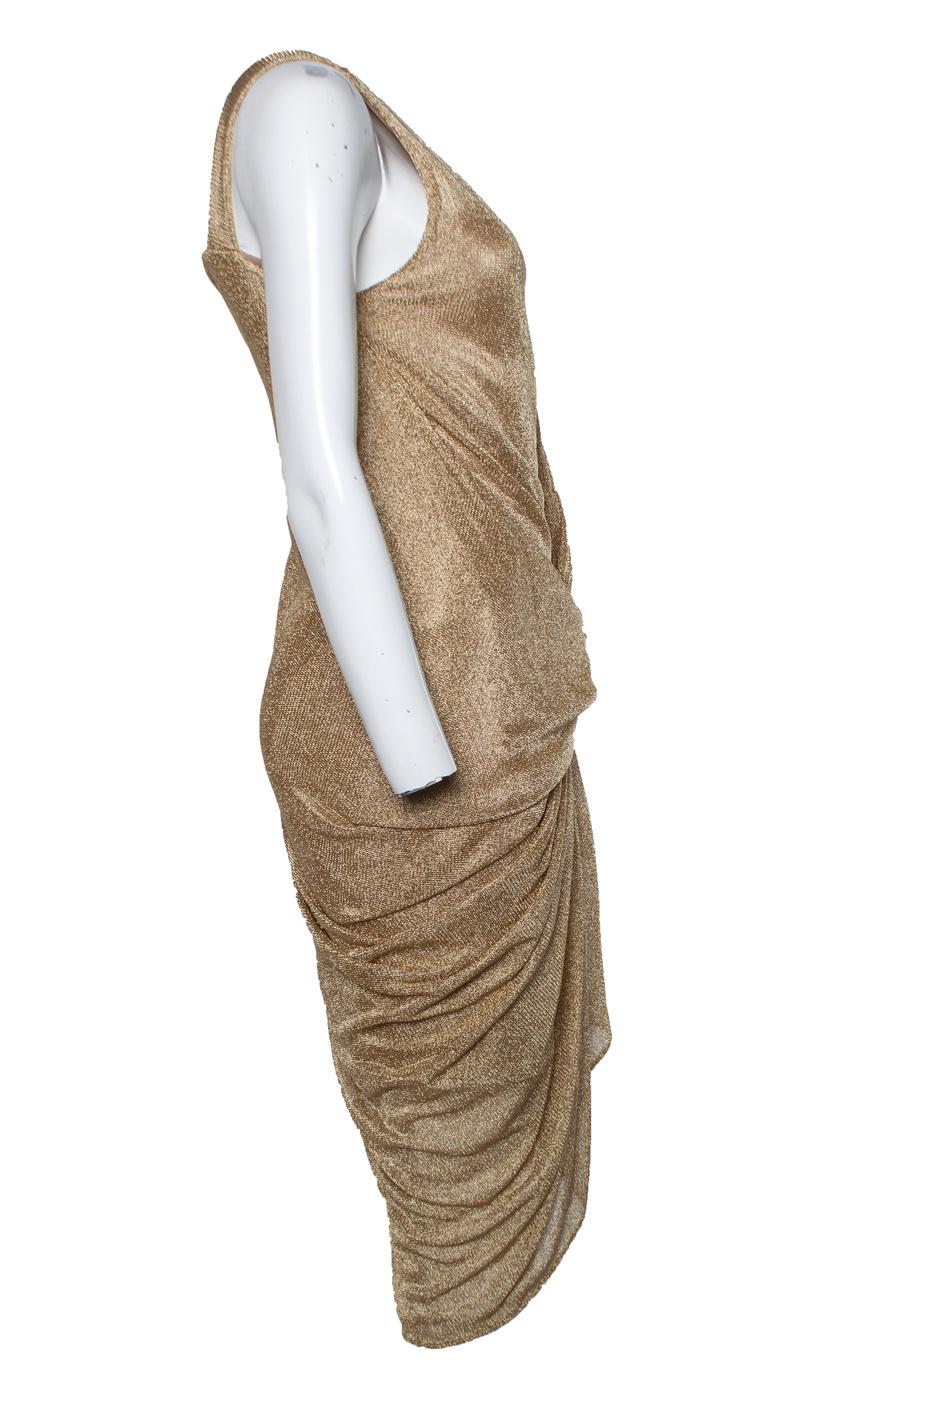 Diane Von Furstenberg, Metallic gold mesh dress In Excellent Condition For Sale In AMSTERDAM, NL